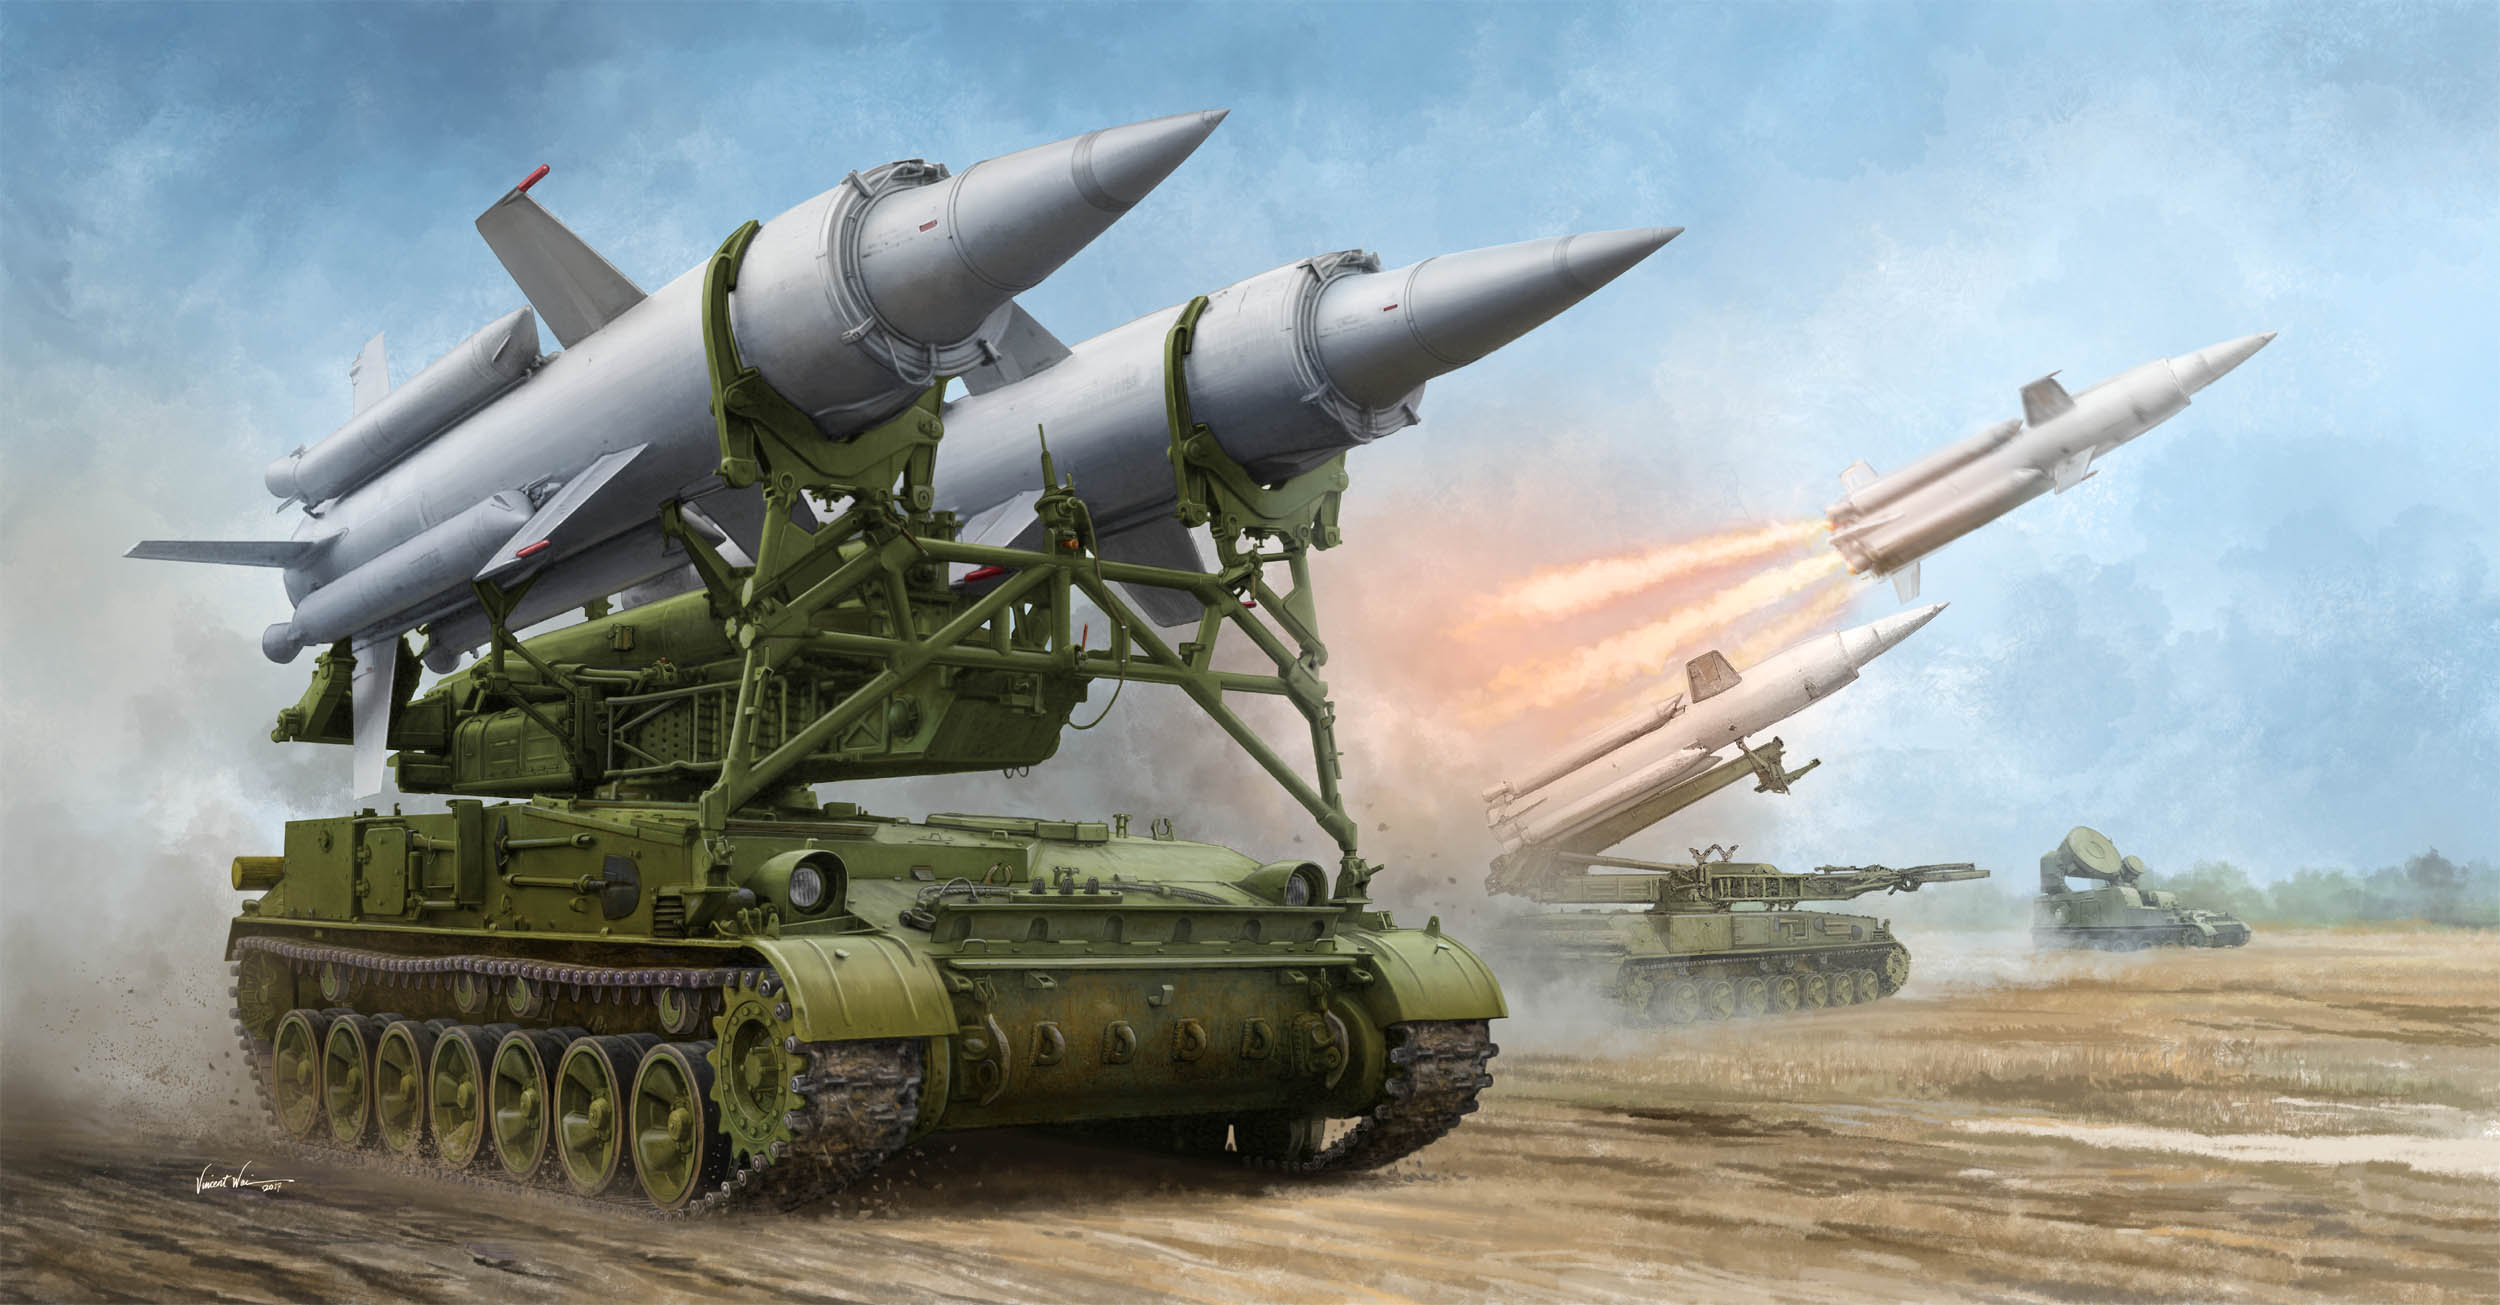 1/35 ソビエト軍 2K11A 対空ミサイルシステム "クルーグ" - ウインドウを閉じる